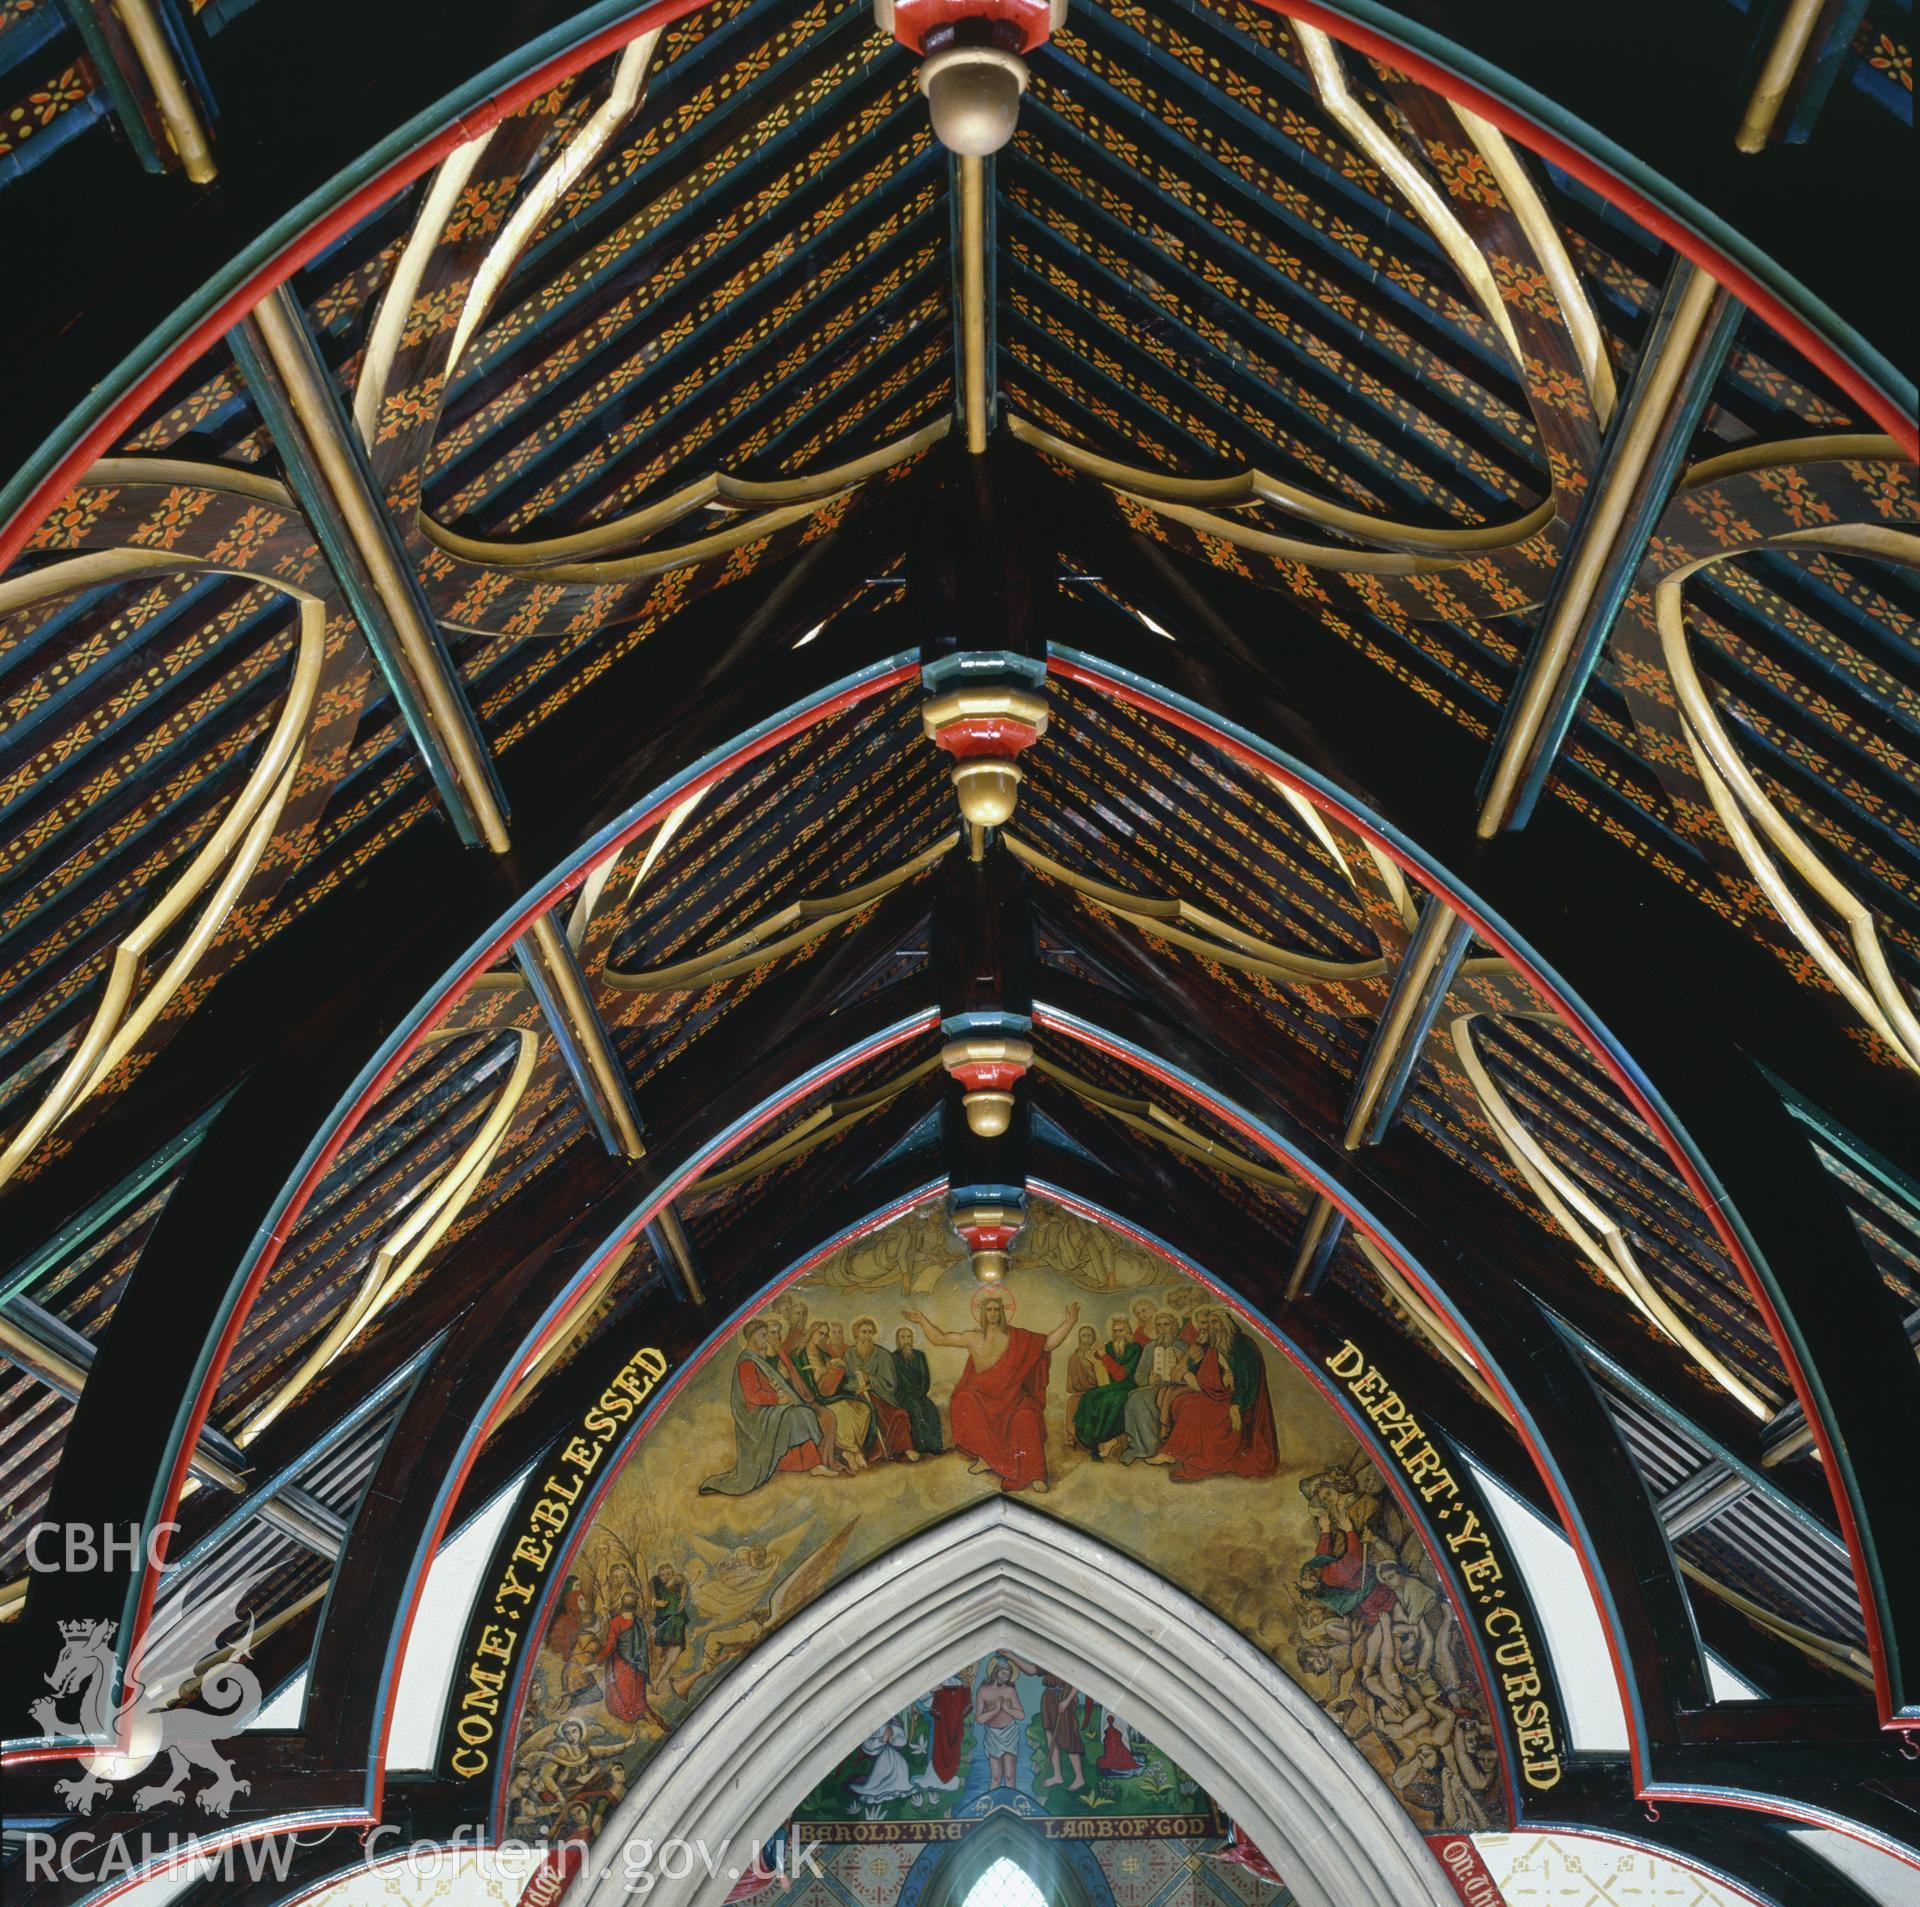 RCAHMW colour transparency showing St John's Church, Penymynydd taken by A.J. Parkinson, 1987.